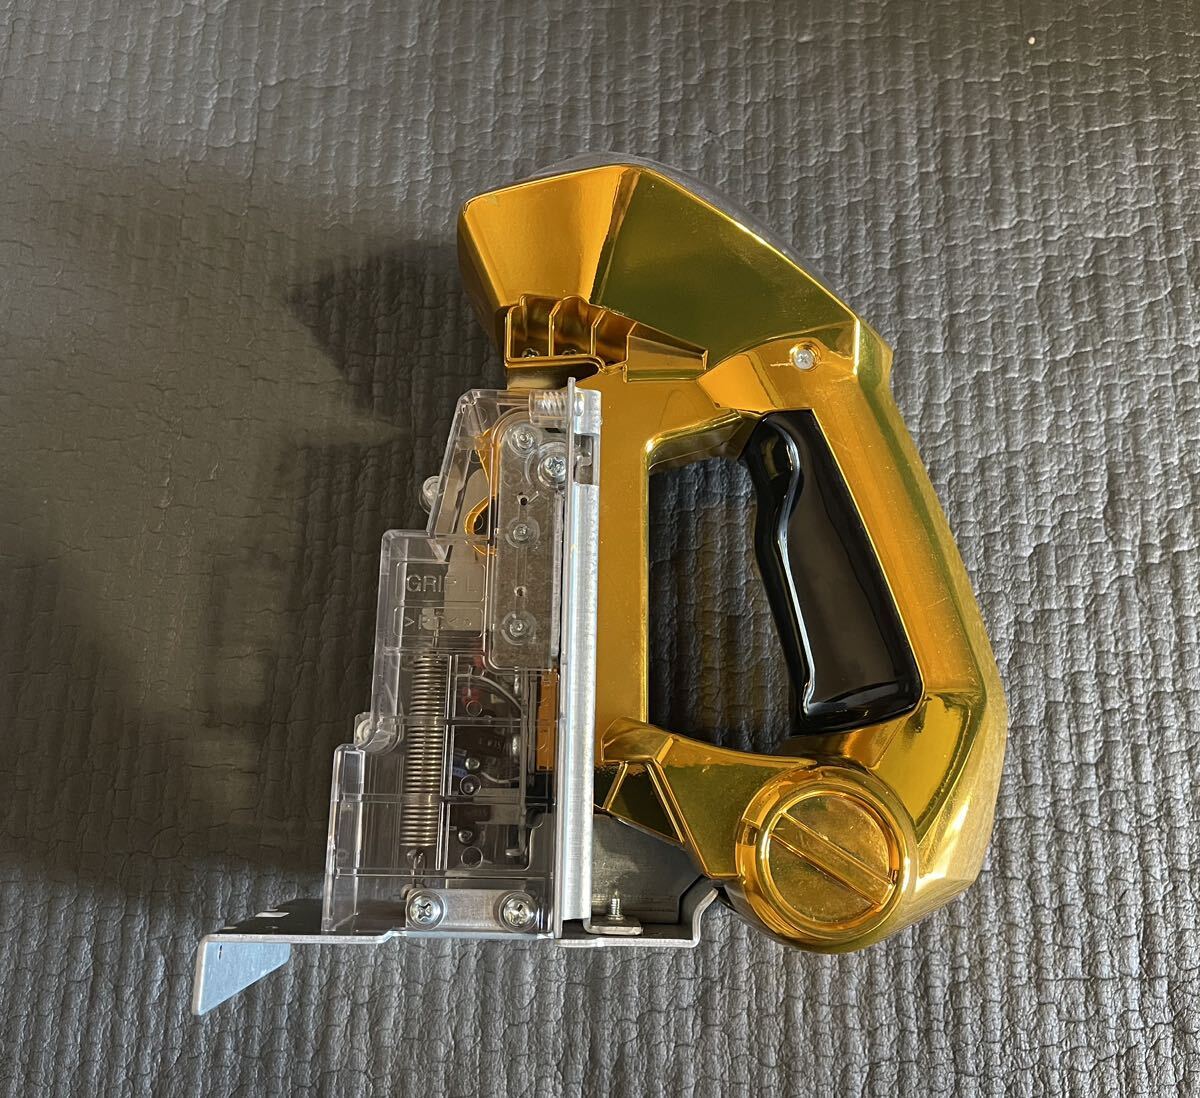  солнечный kyo-V контроллер Gold 